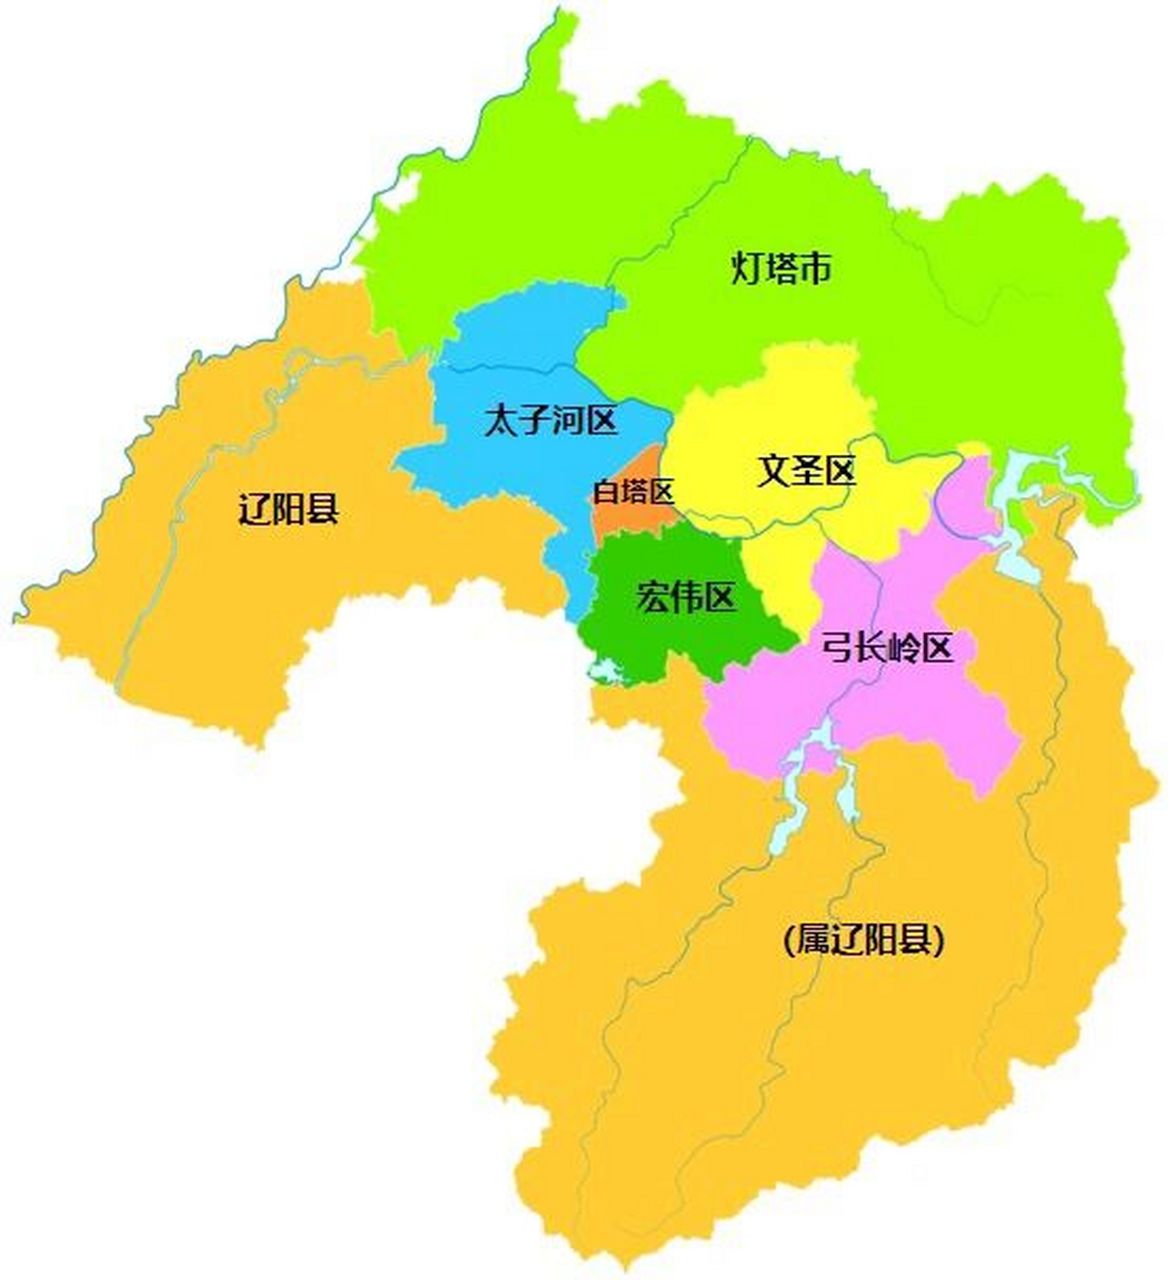 辽阳行政区划 辽阳市,辽宁省辖地级市,总面积为4743平方公里,常住人口